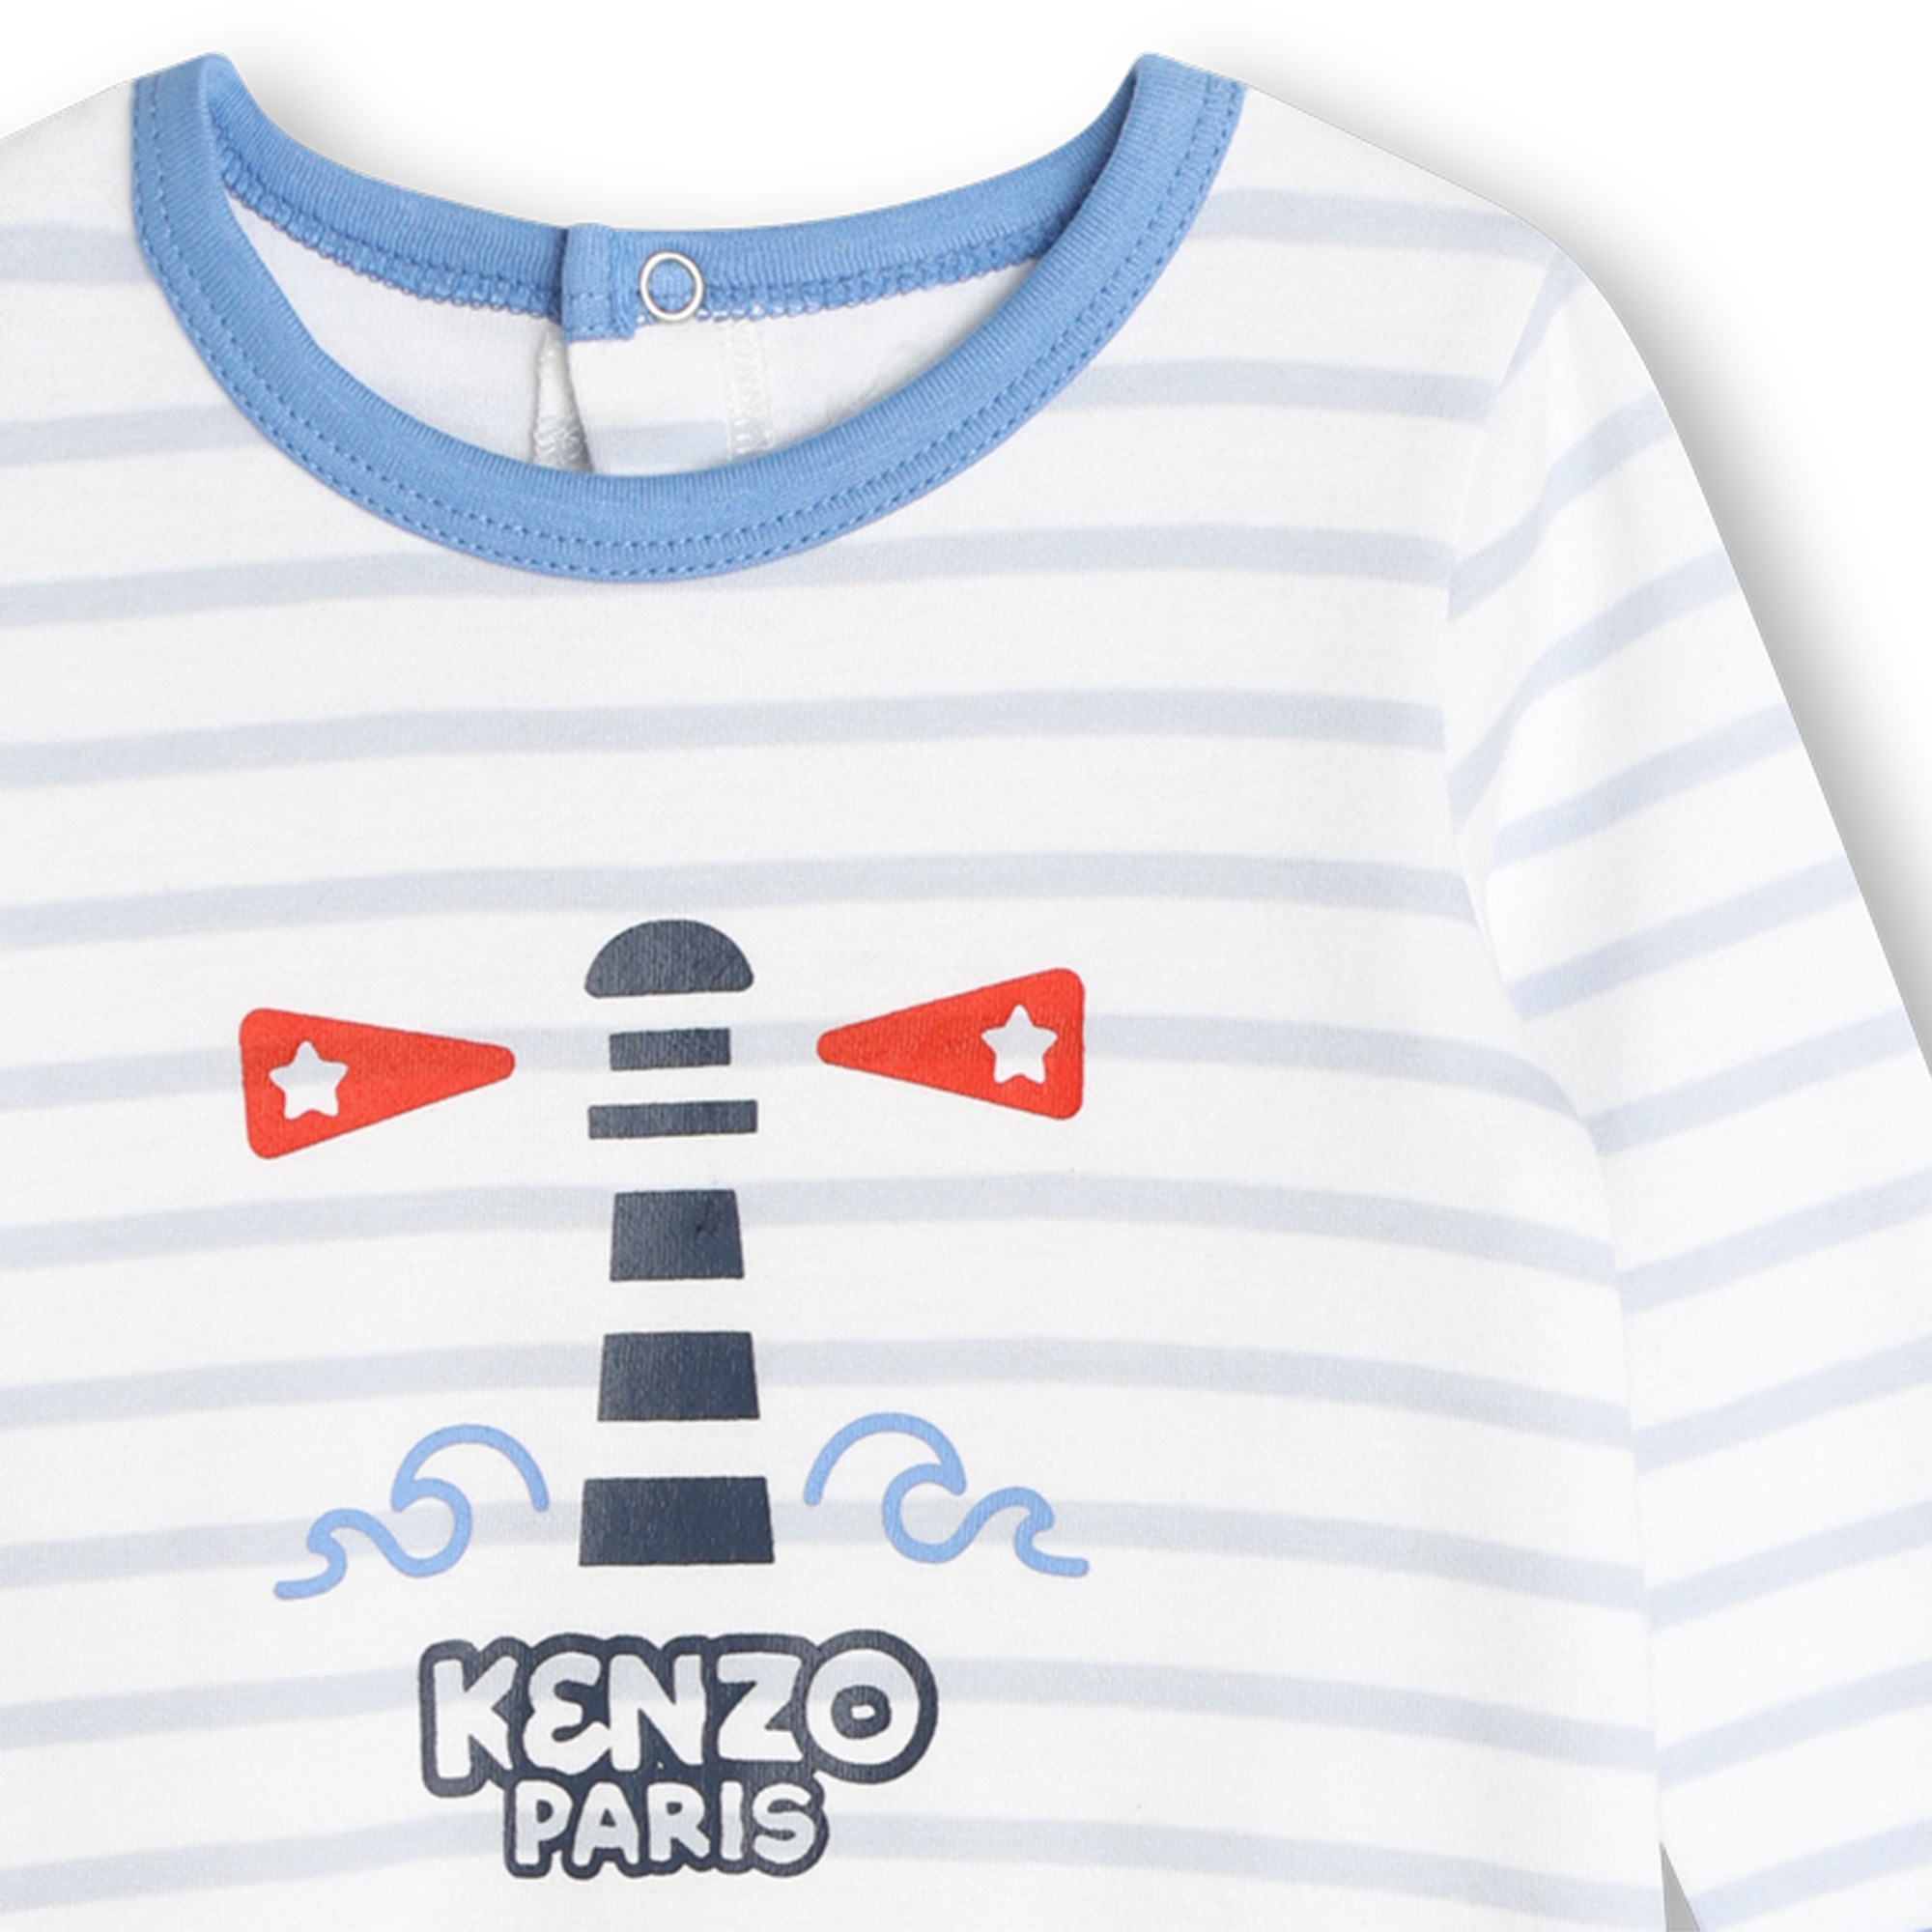 Front print striped pyjamas KENZO KIDS for BOY